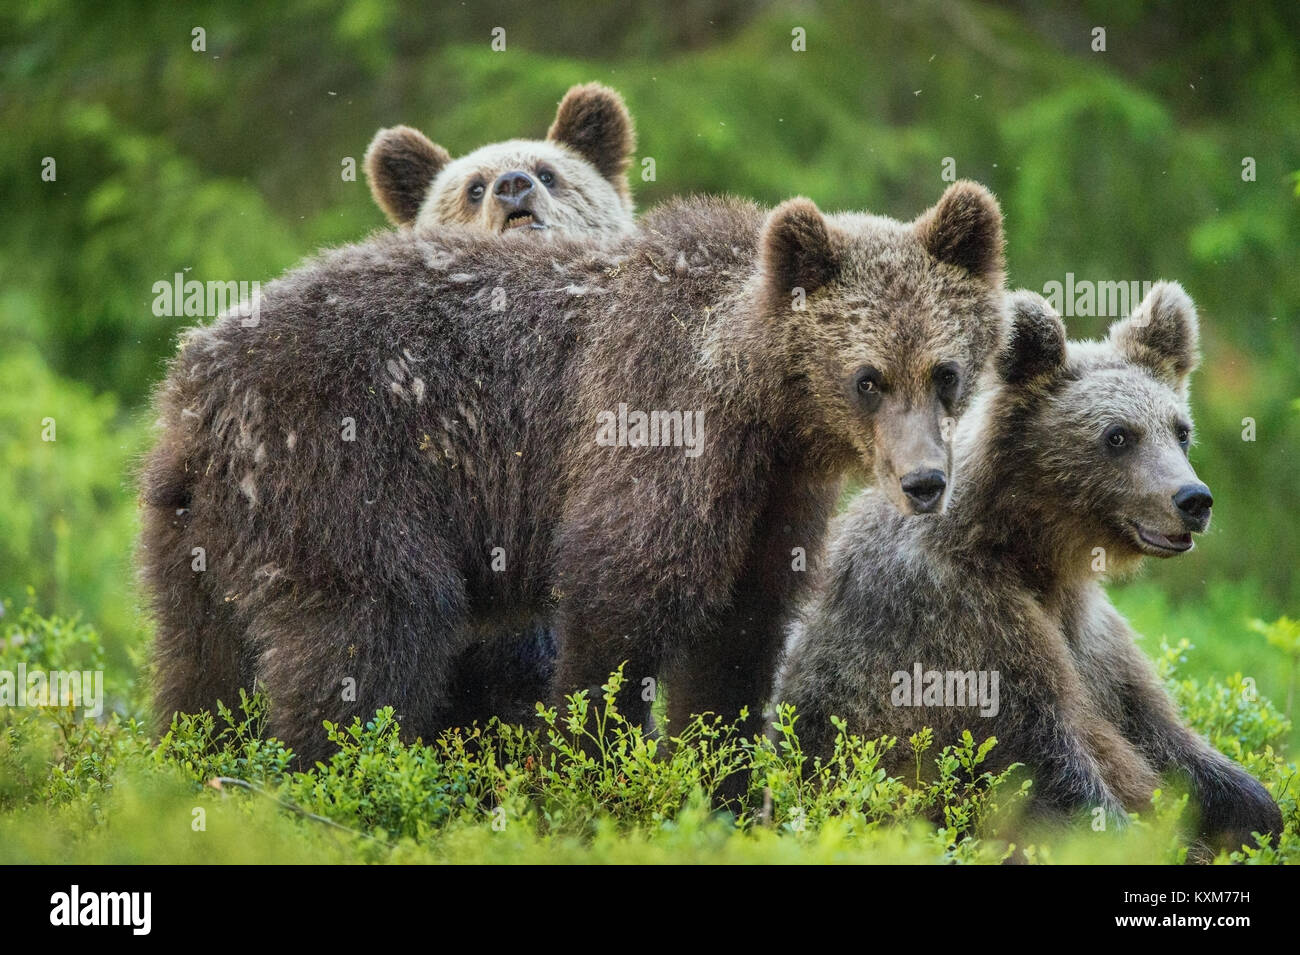 Cubs de oso pardo (Ursus arctos arctos) en el bosque de verano. Fondo verde natural Foto de stock